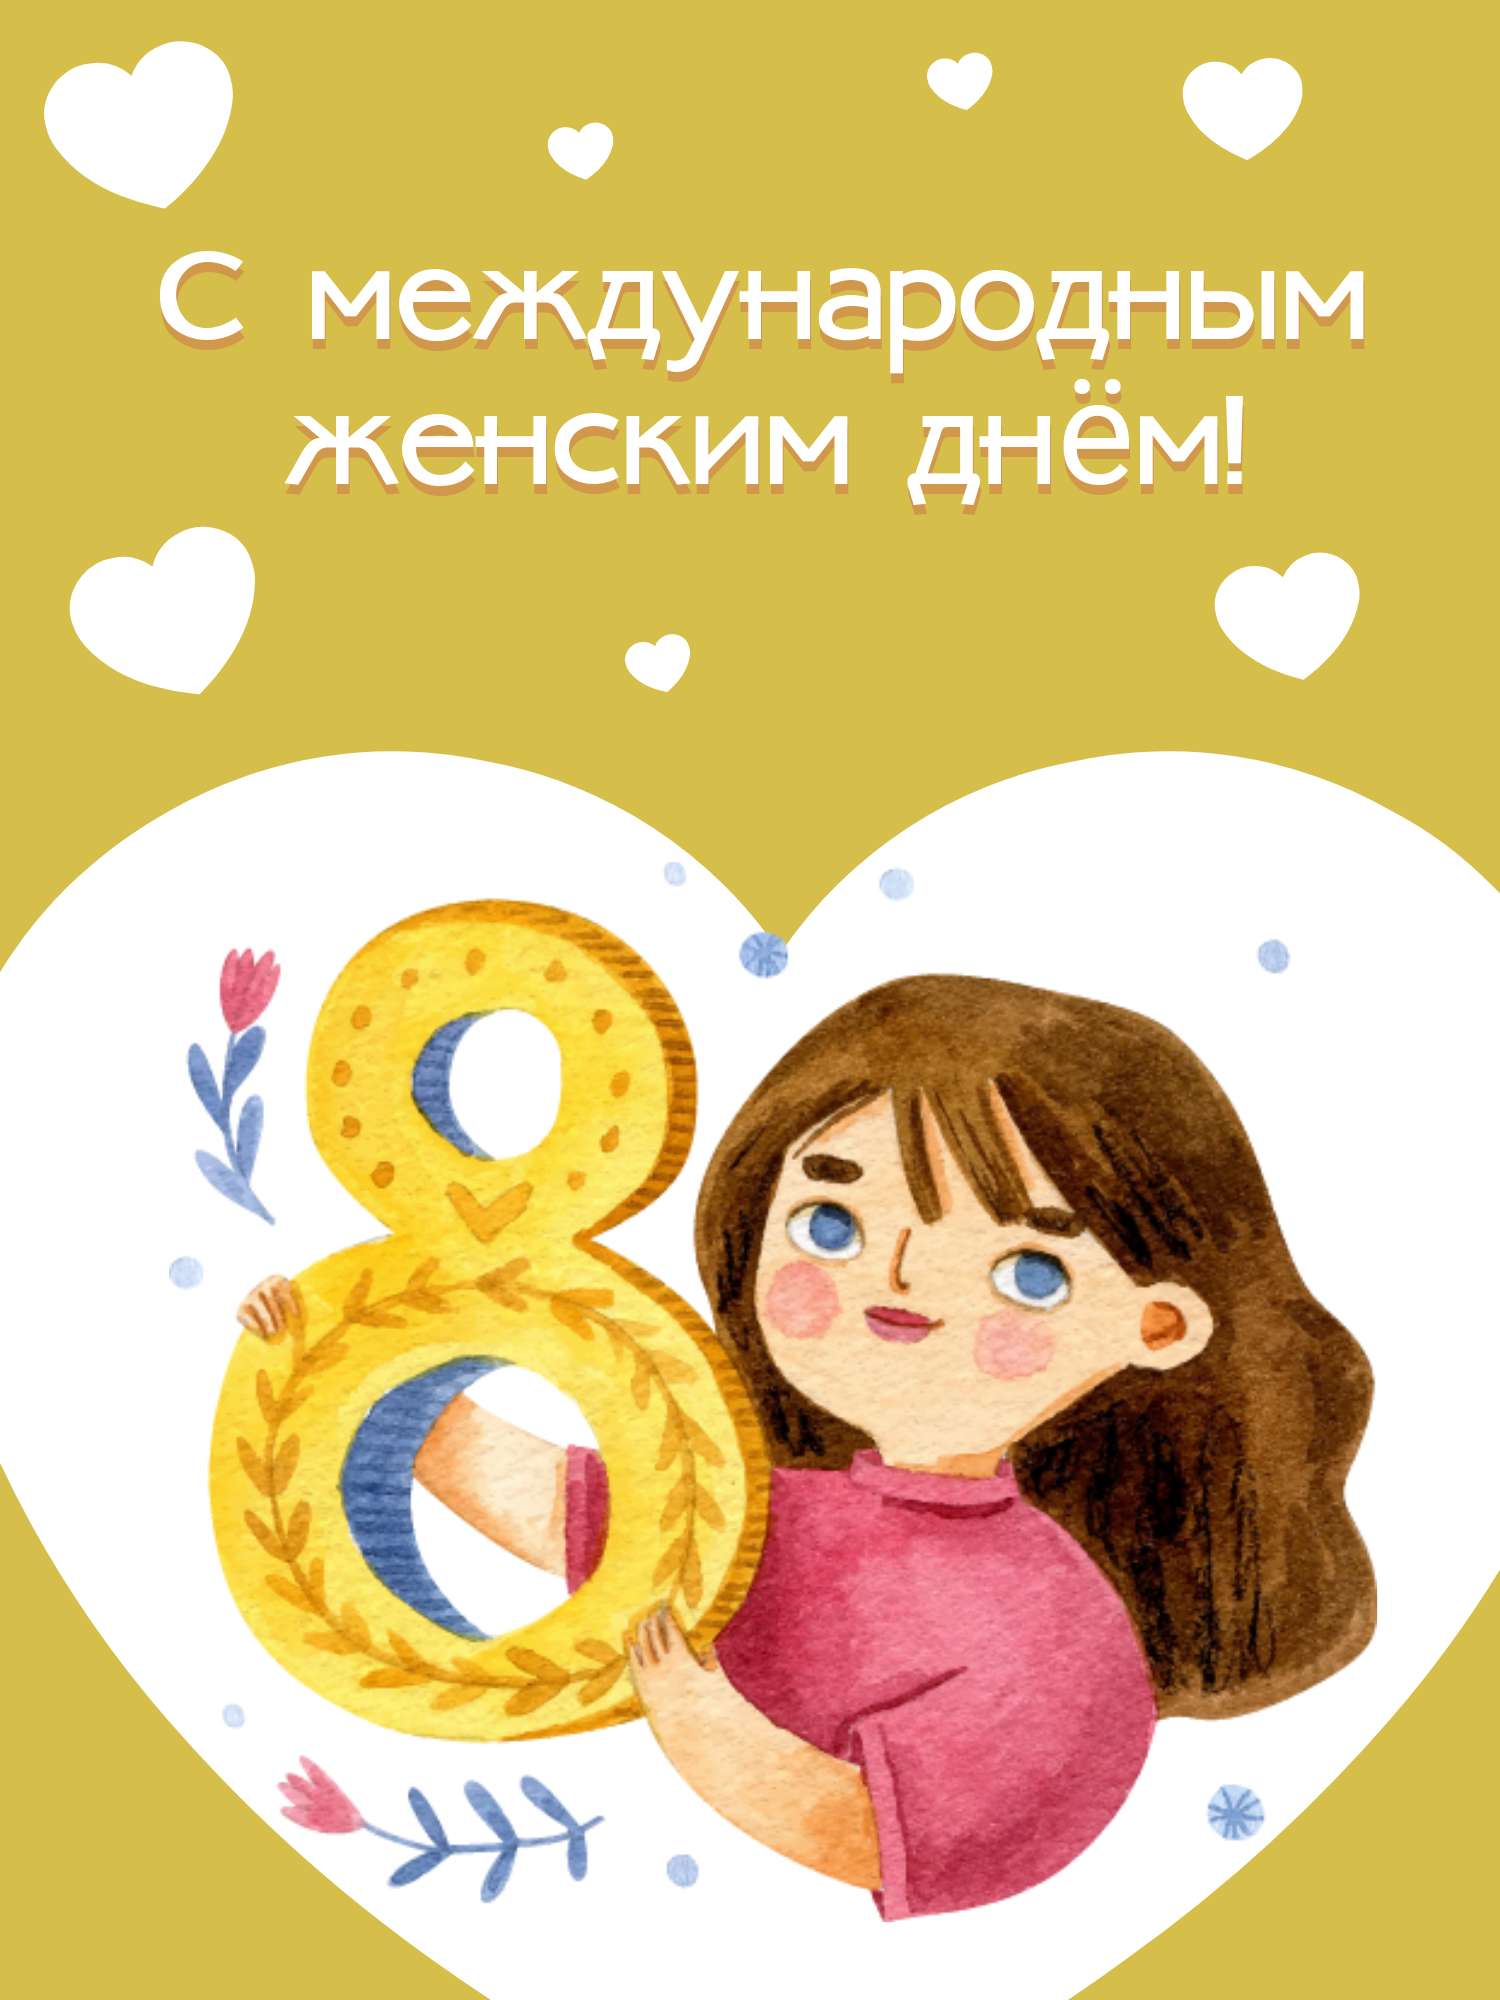 Нарисованная открытка в день 8 марта с милой девочкой с цифрой 8 в руках на фоне сердца